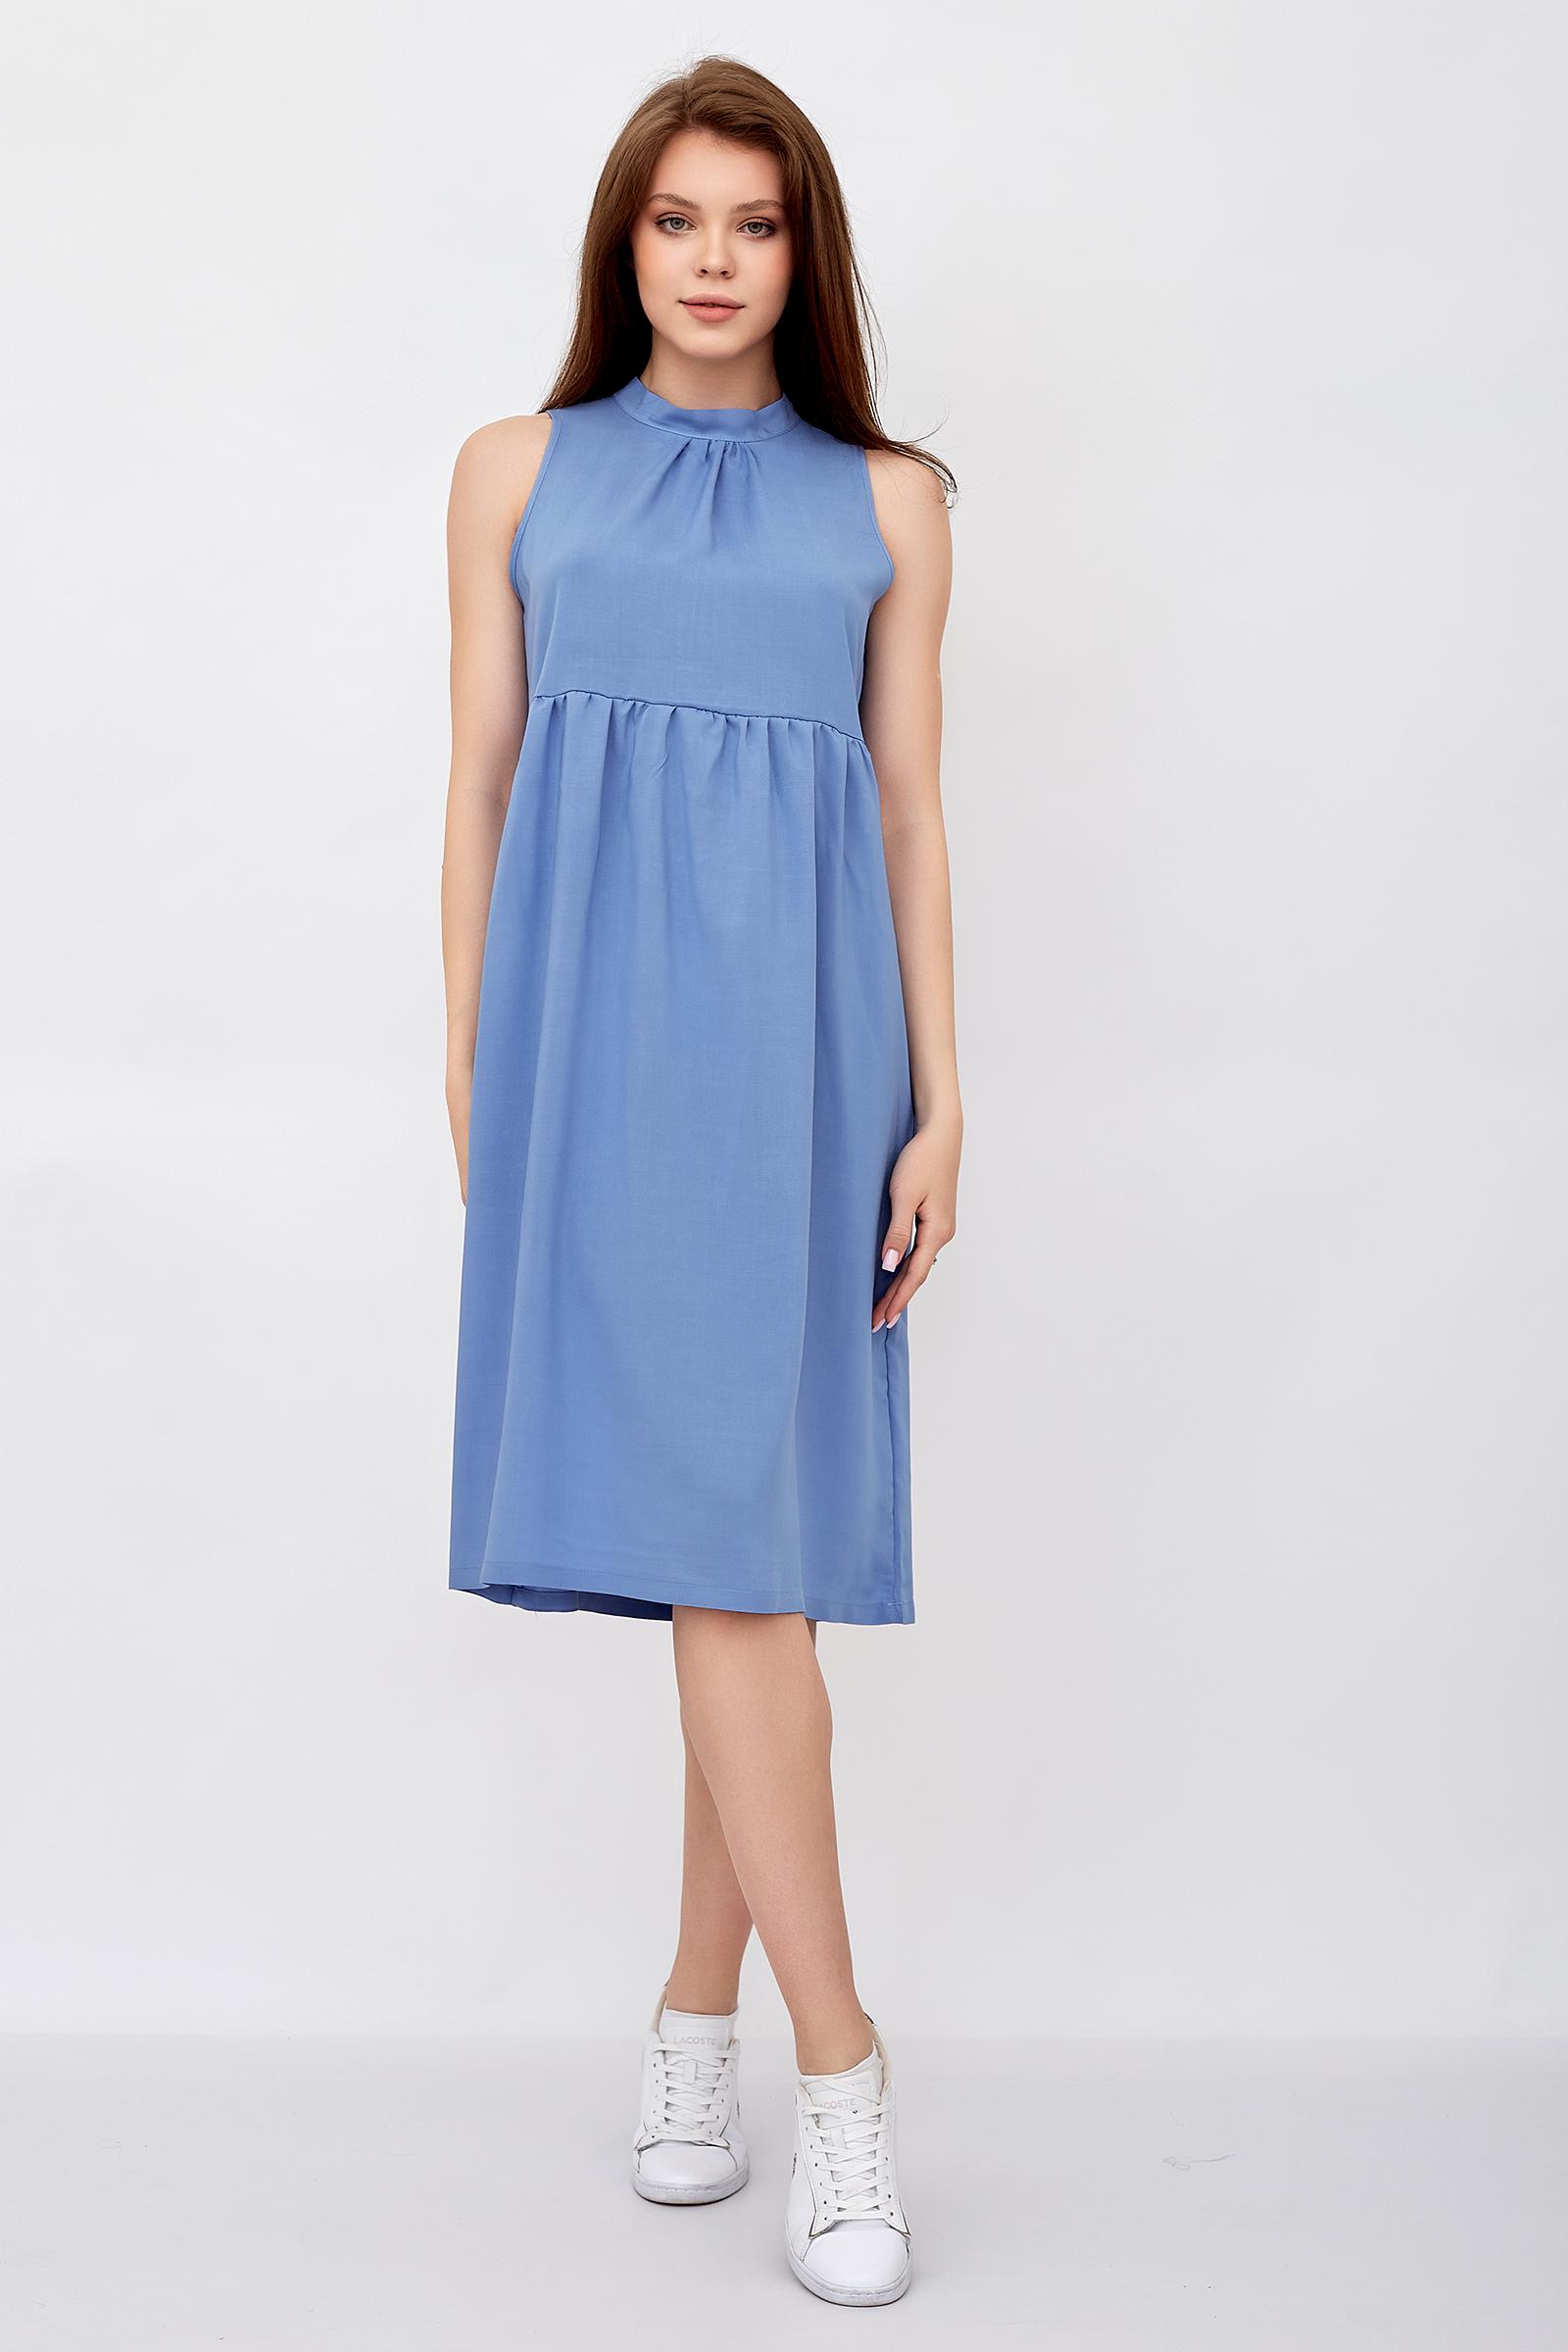 Платье женское LikaDress 18-1644 голубое 48 RU